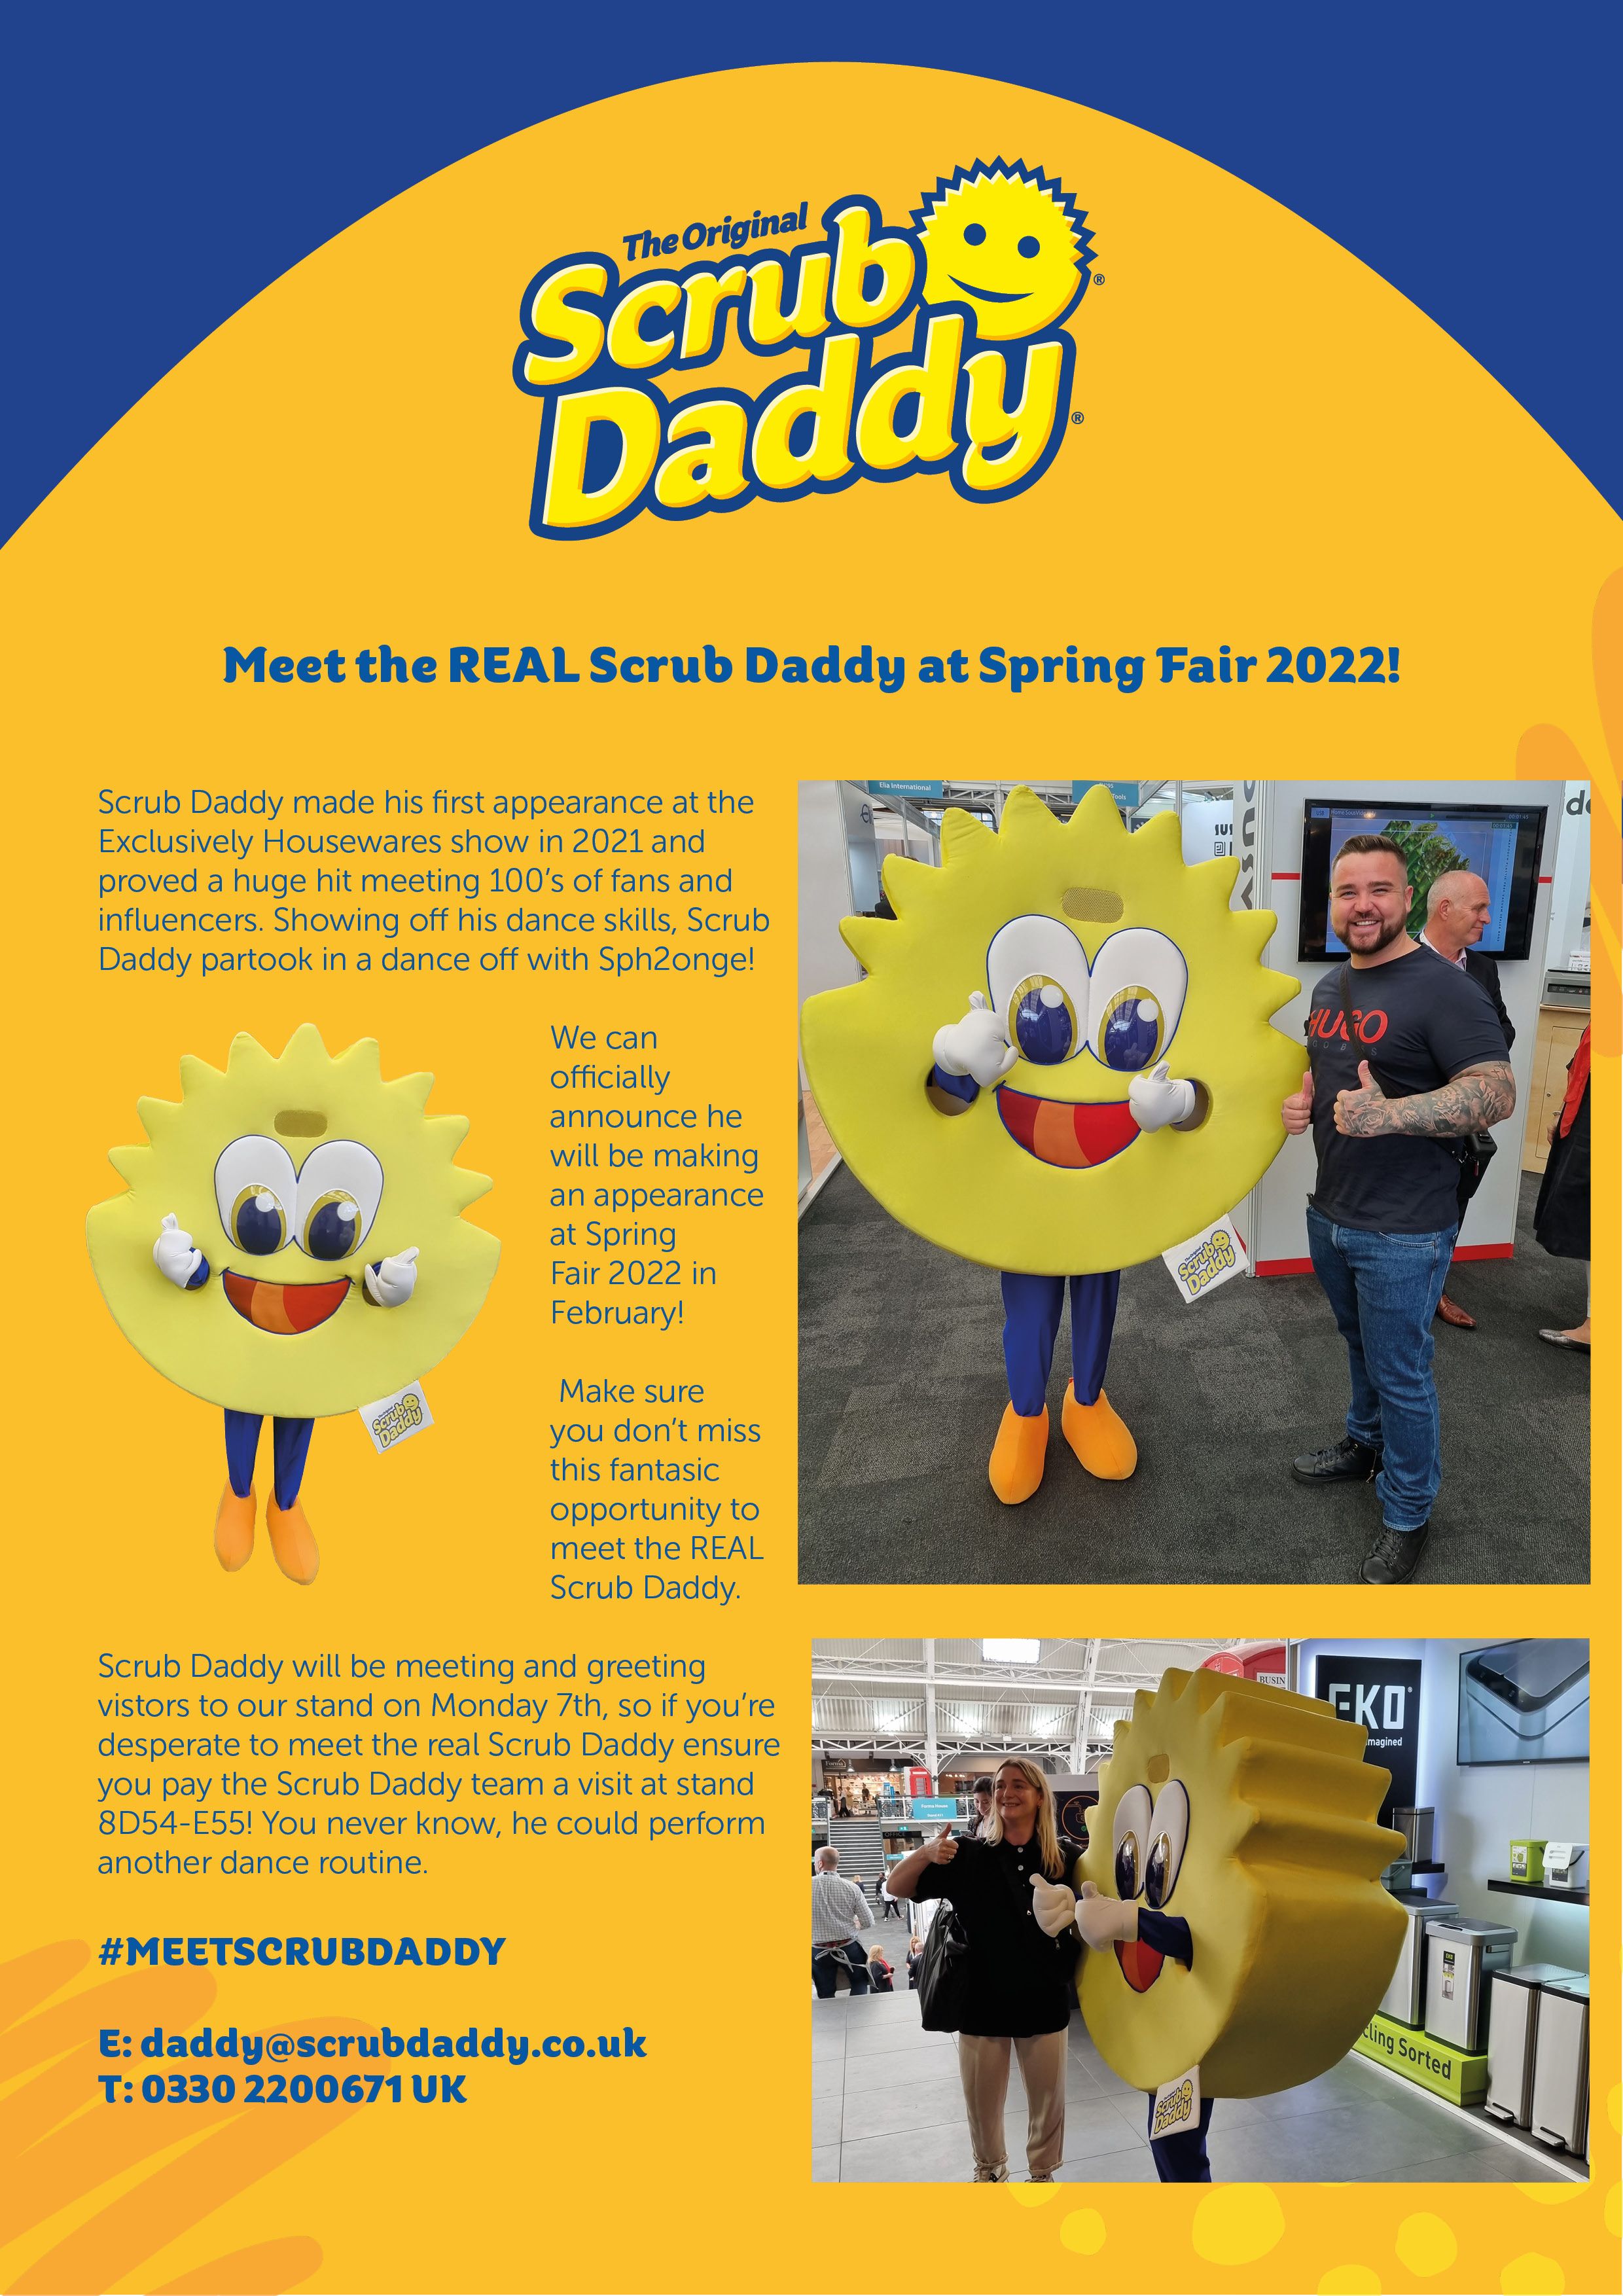 Meet the REAL Scrub Daddy at Spring Fair 2022!